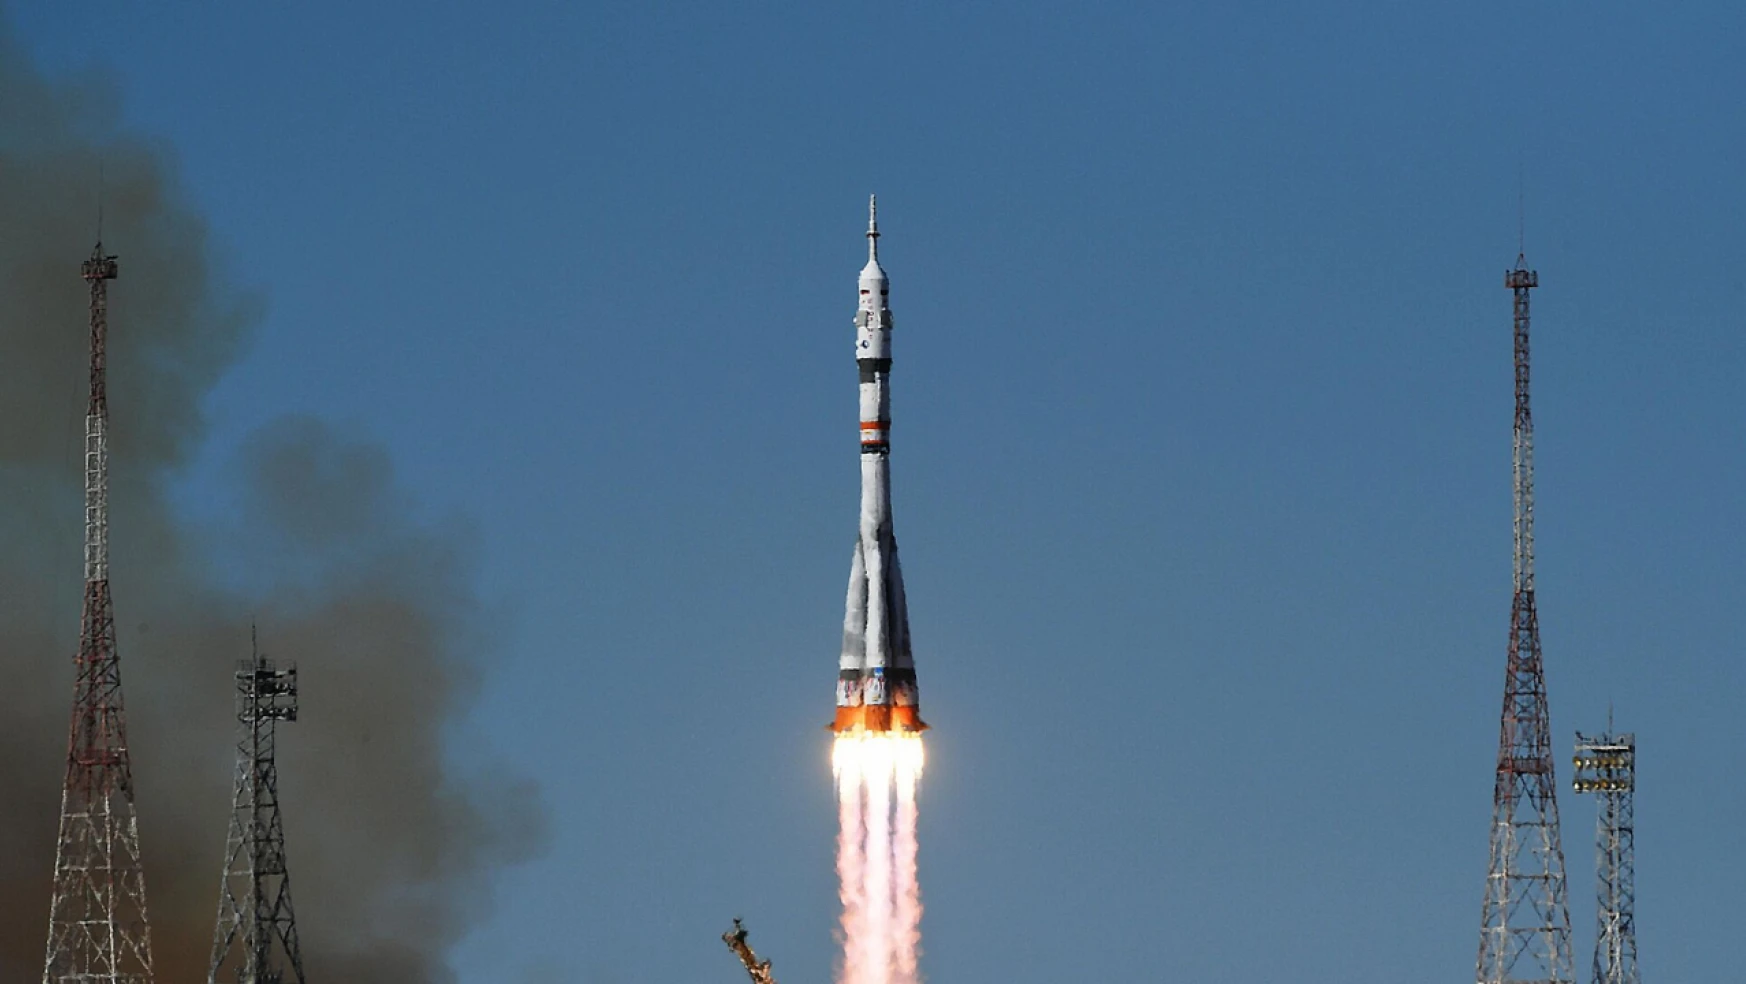 Rusya'nın Soyuz MS-24 uzay aracı Kazakistan'dan fırlatıldı